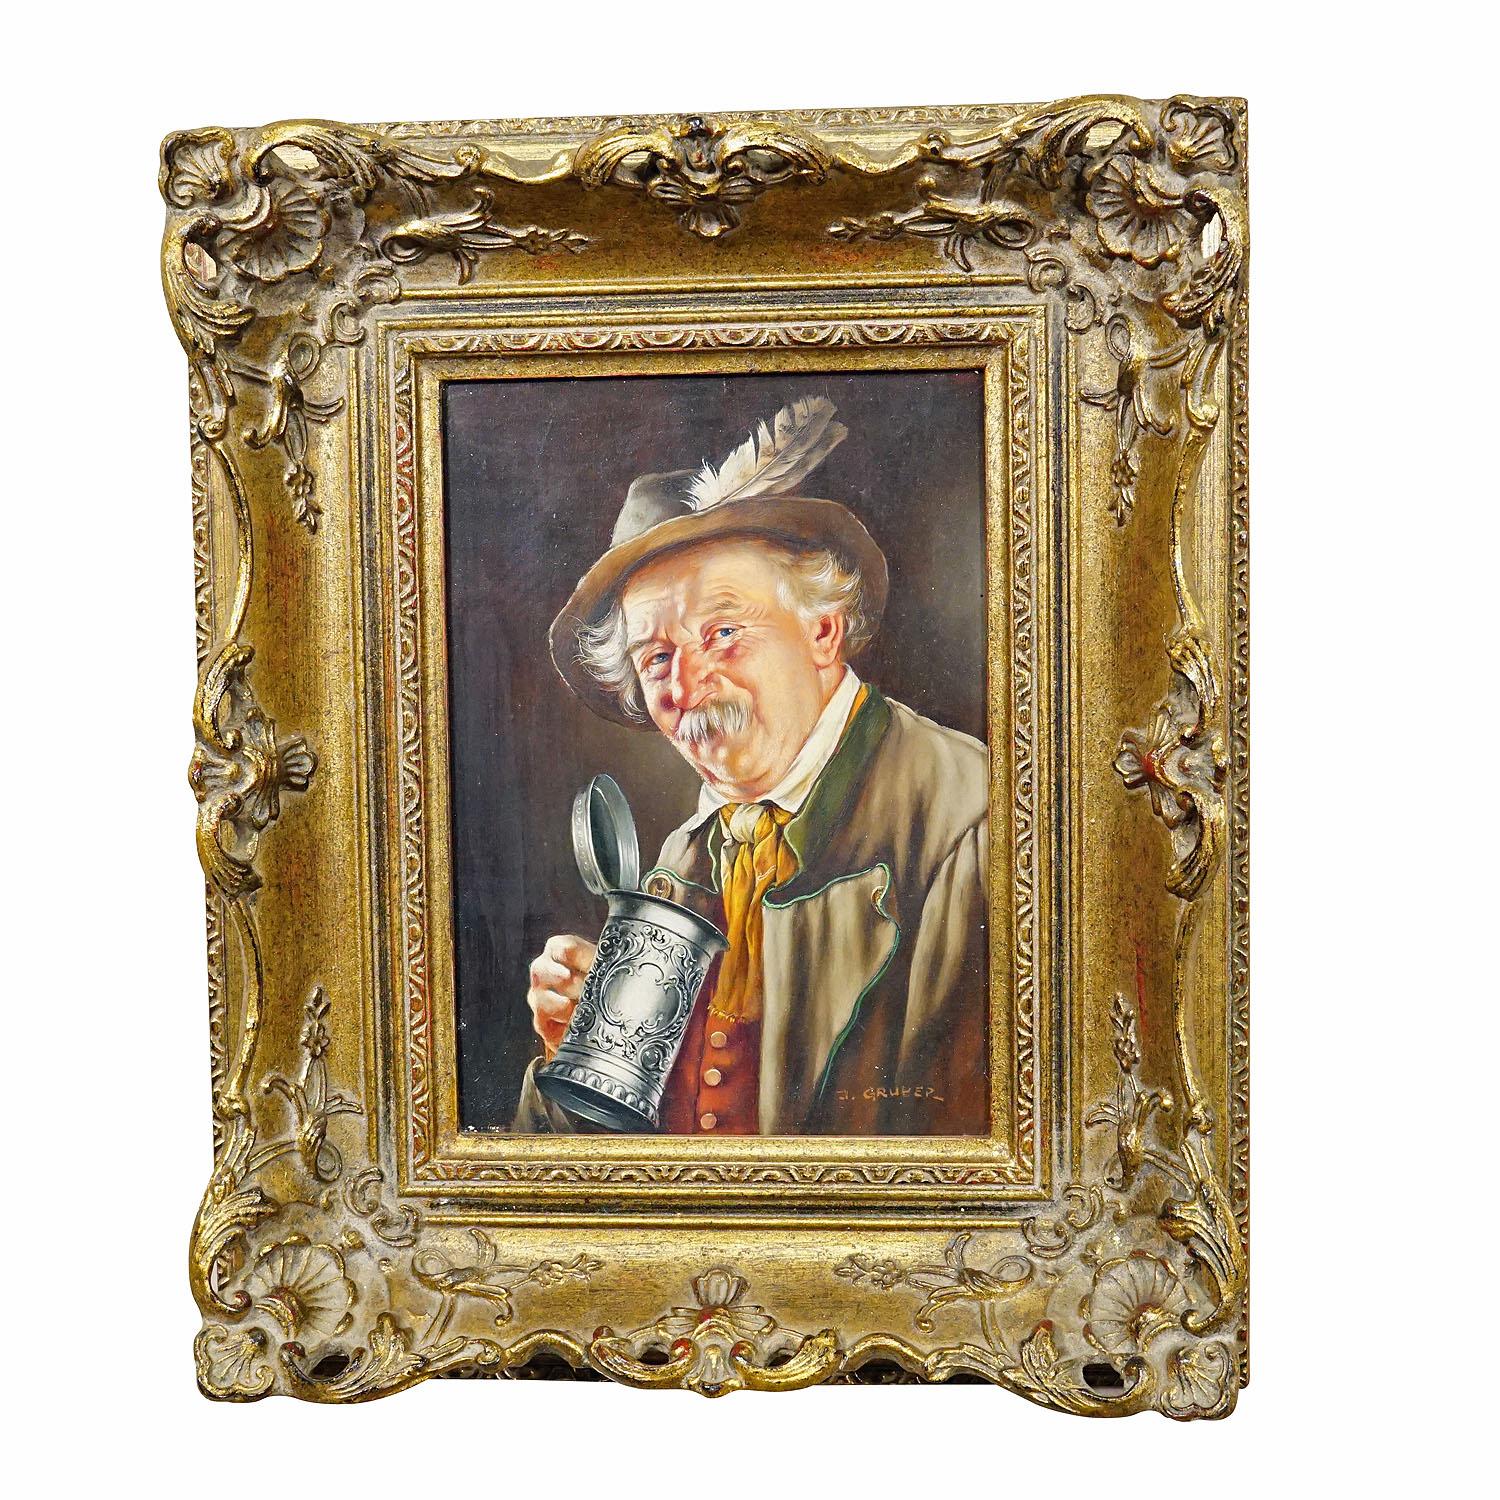 J. Gruber - Portrait d'un homme populaire bavarois avec une chope de bière, huile sur Wood

Une peinture à l'huile colorée représentant un homme bavarois buvant de la bière dans sa robe du dimanche. Peint sur bois avec des couleurs pastel vers les